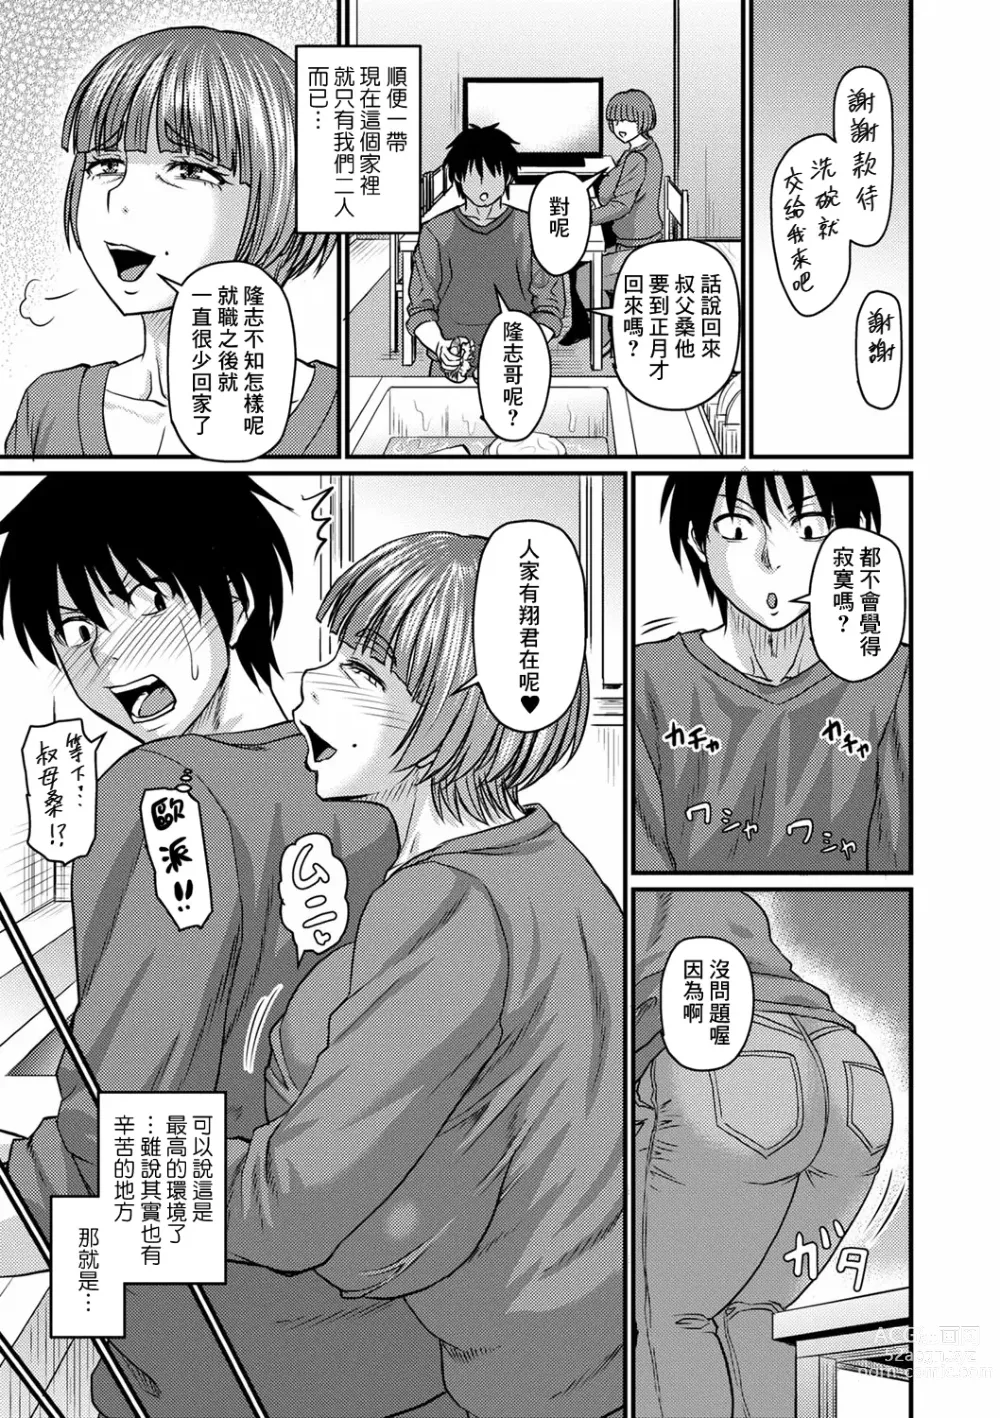 Page 3 of manga Obasan to Futarigurashi